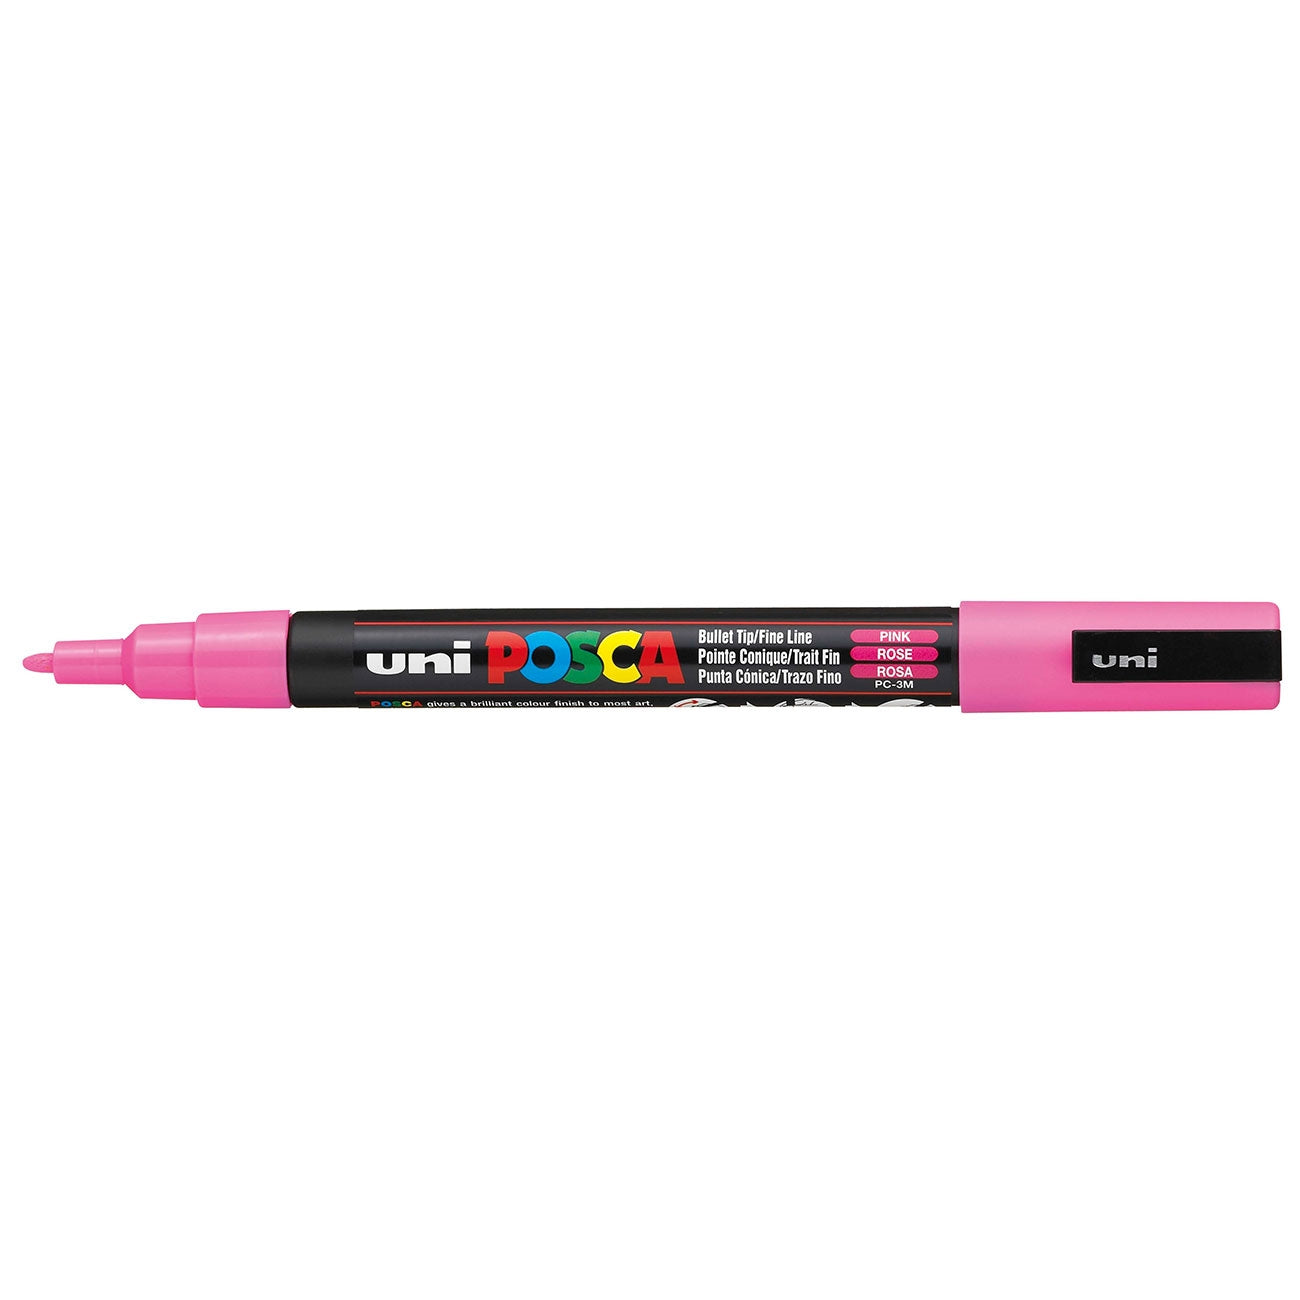 POSCA Marker Pen PC-3M - Full Range 27 Pen Set - All Colours 